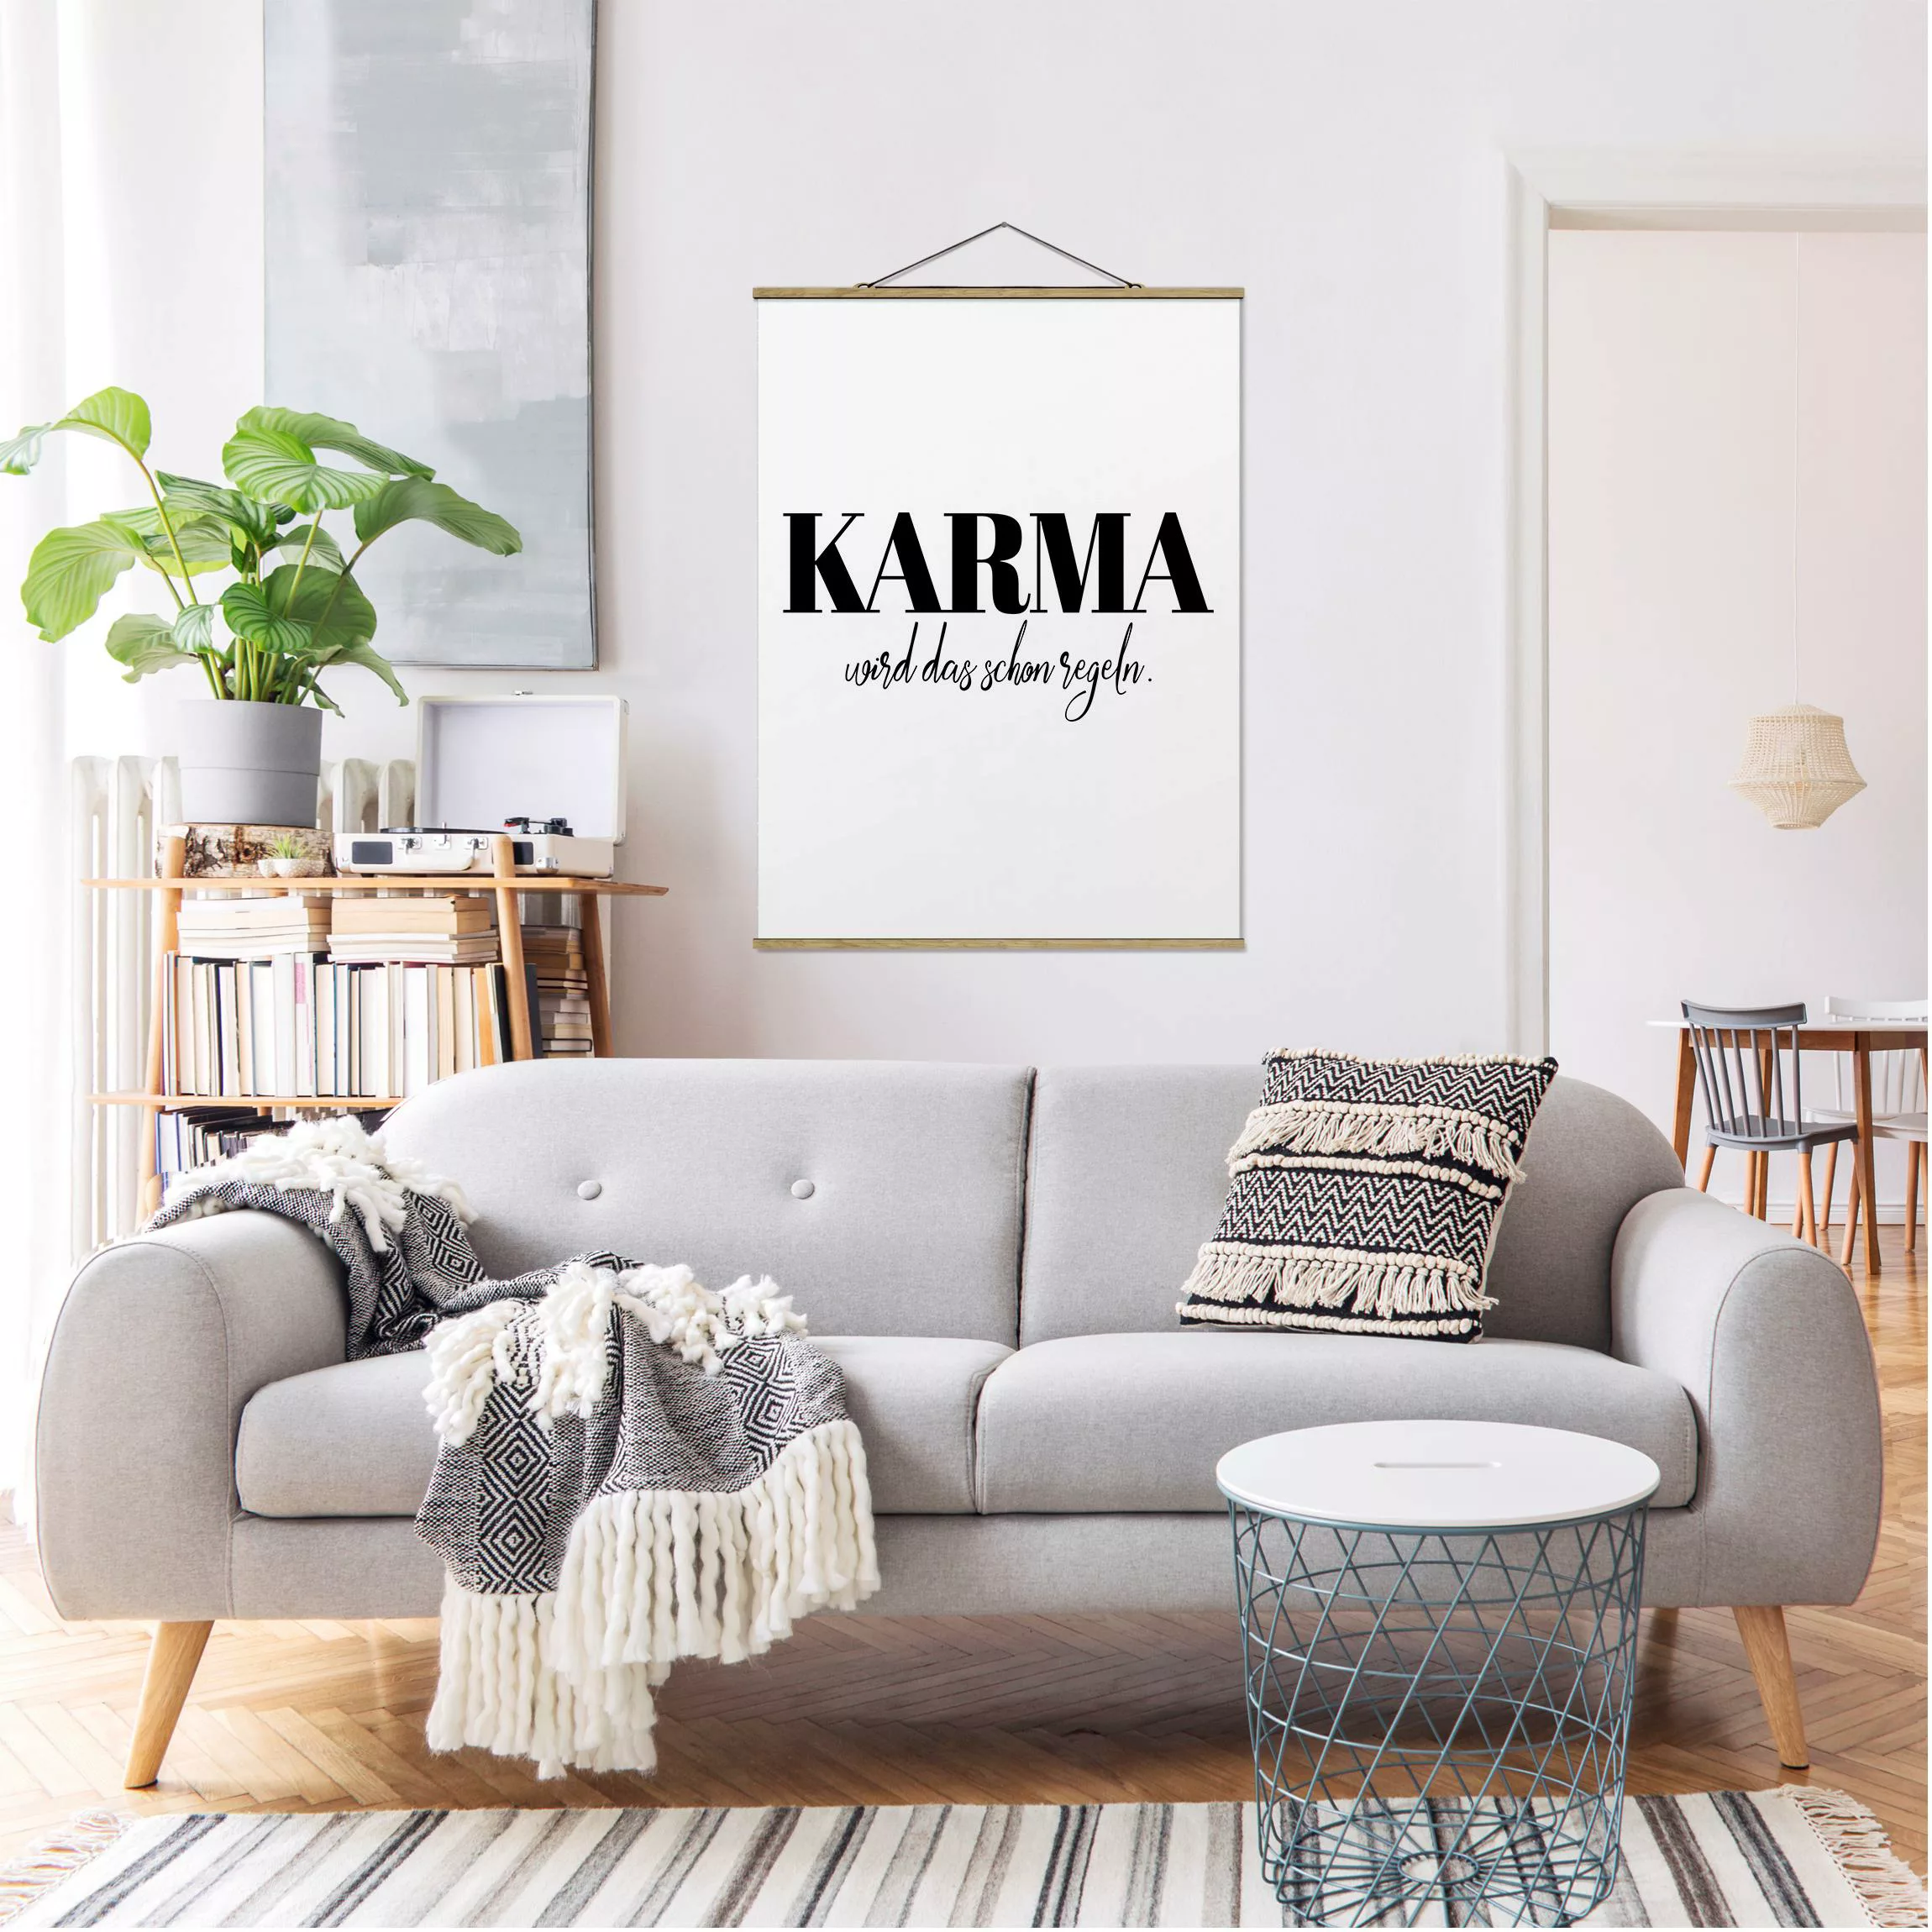 Stoffbild Spruch mit Posterleisten - Hochformat Karma wird das schon regeln günstig online kaufen